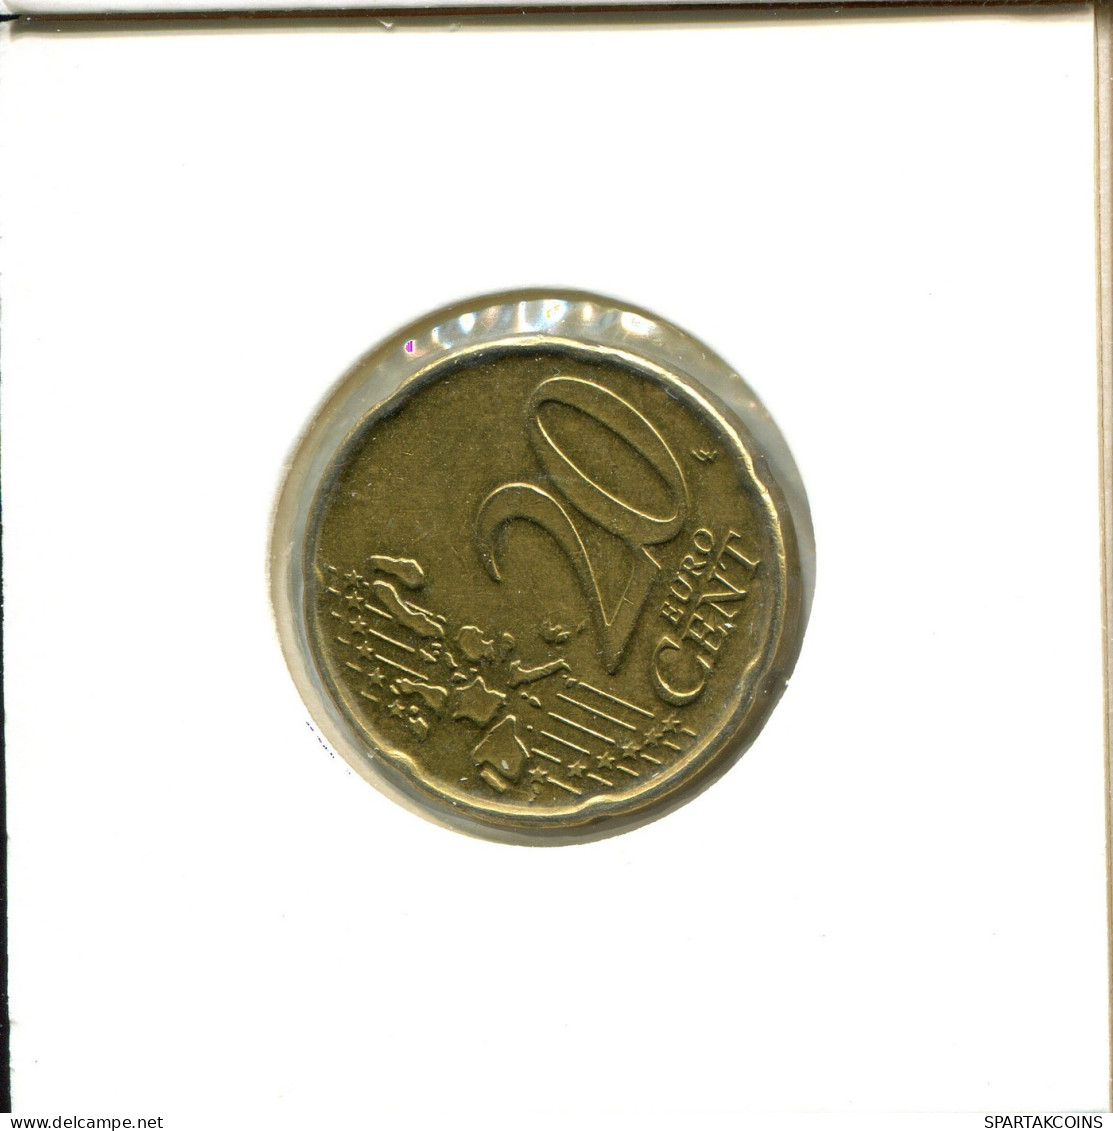 20 EURO CENTS 2005 BELGIUM Coin #EU051.U.A - Belgio